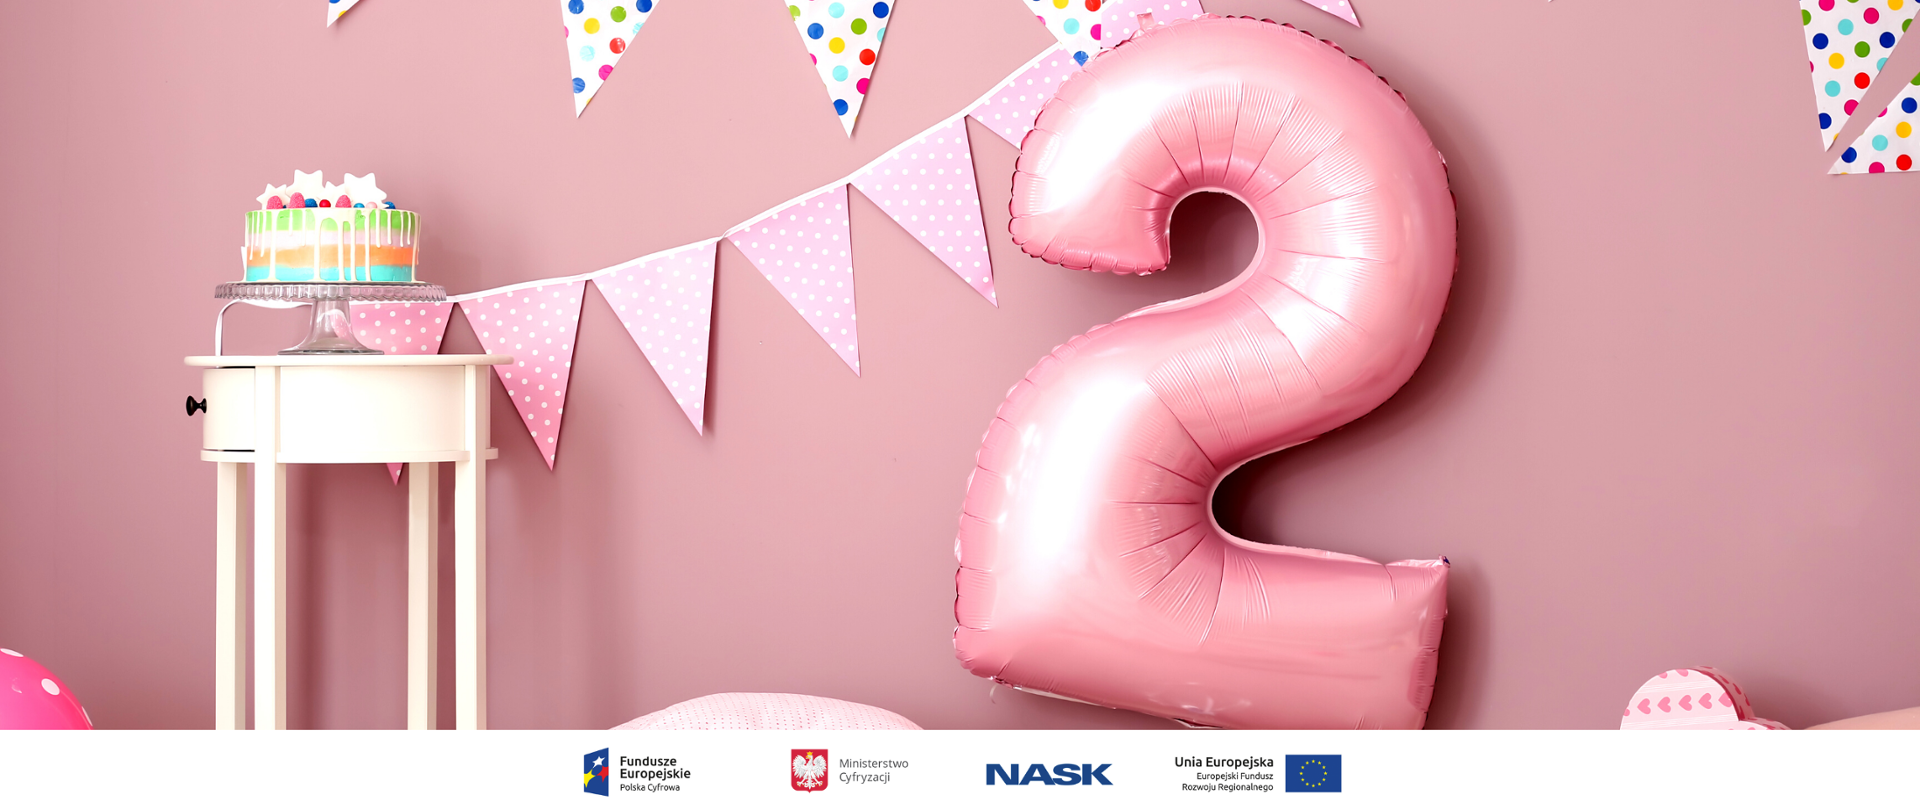 Duży różowy balon w kształcie cyfry 2. Obok stolik, na którym stoi kolorowy tort.